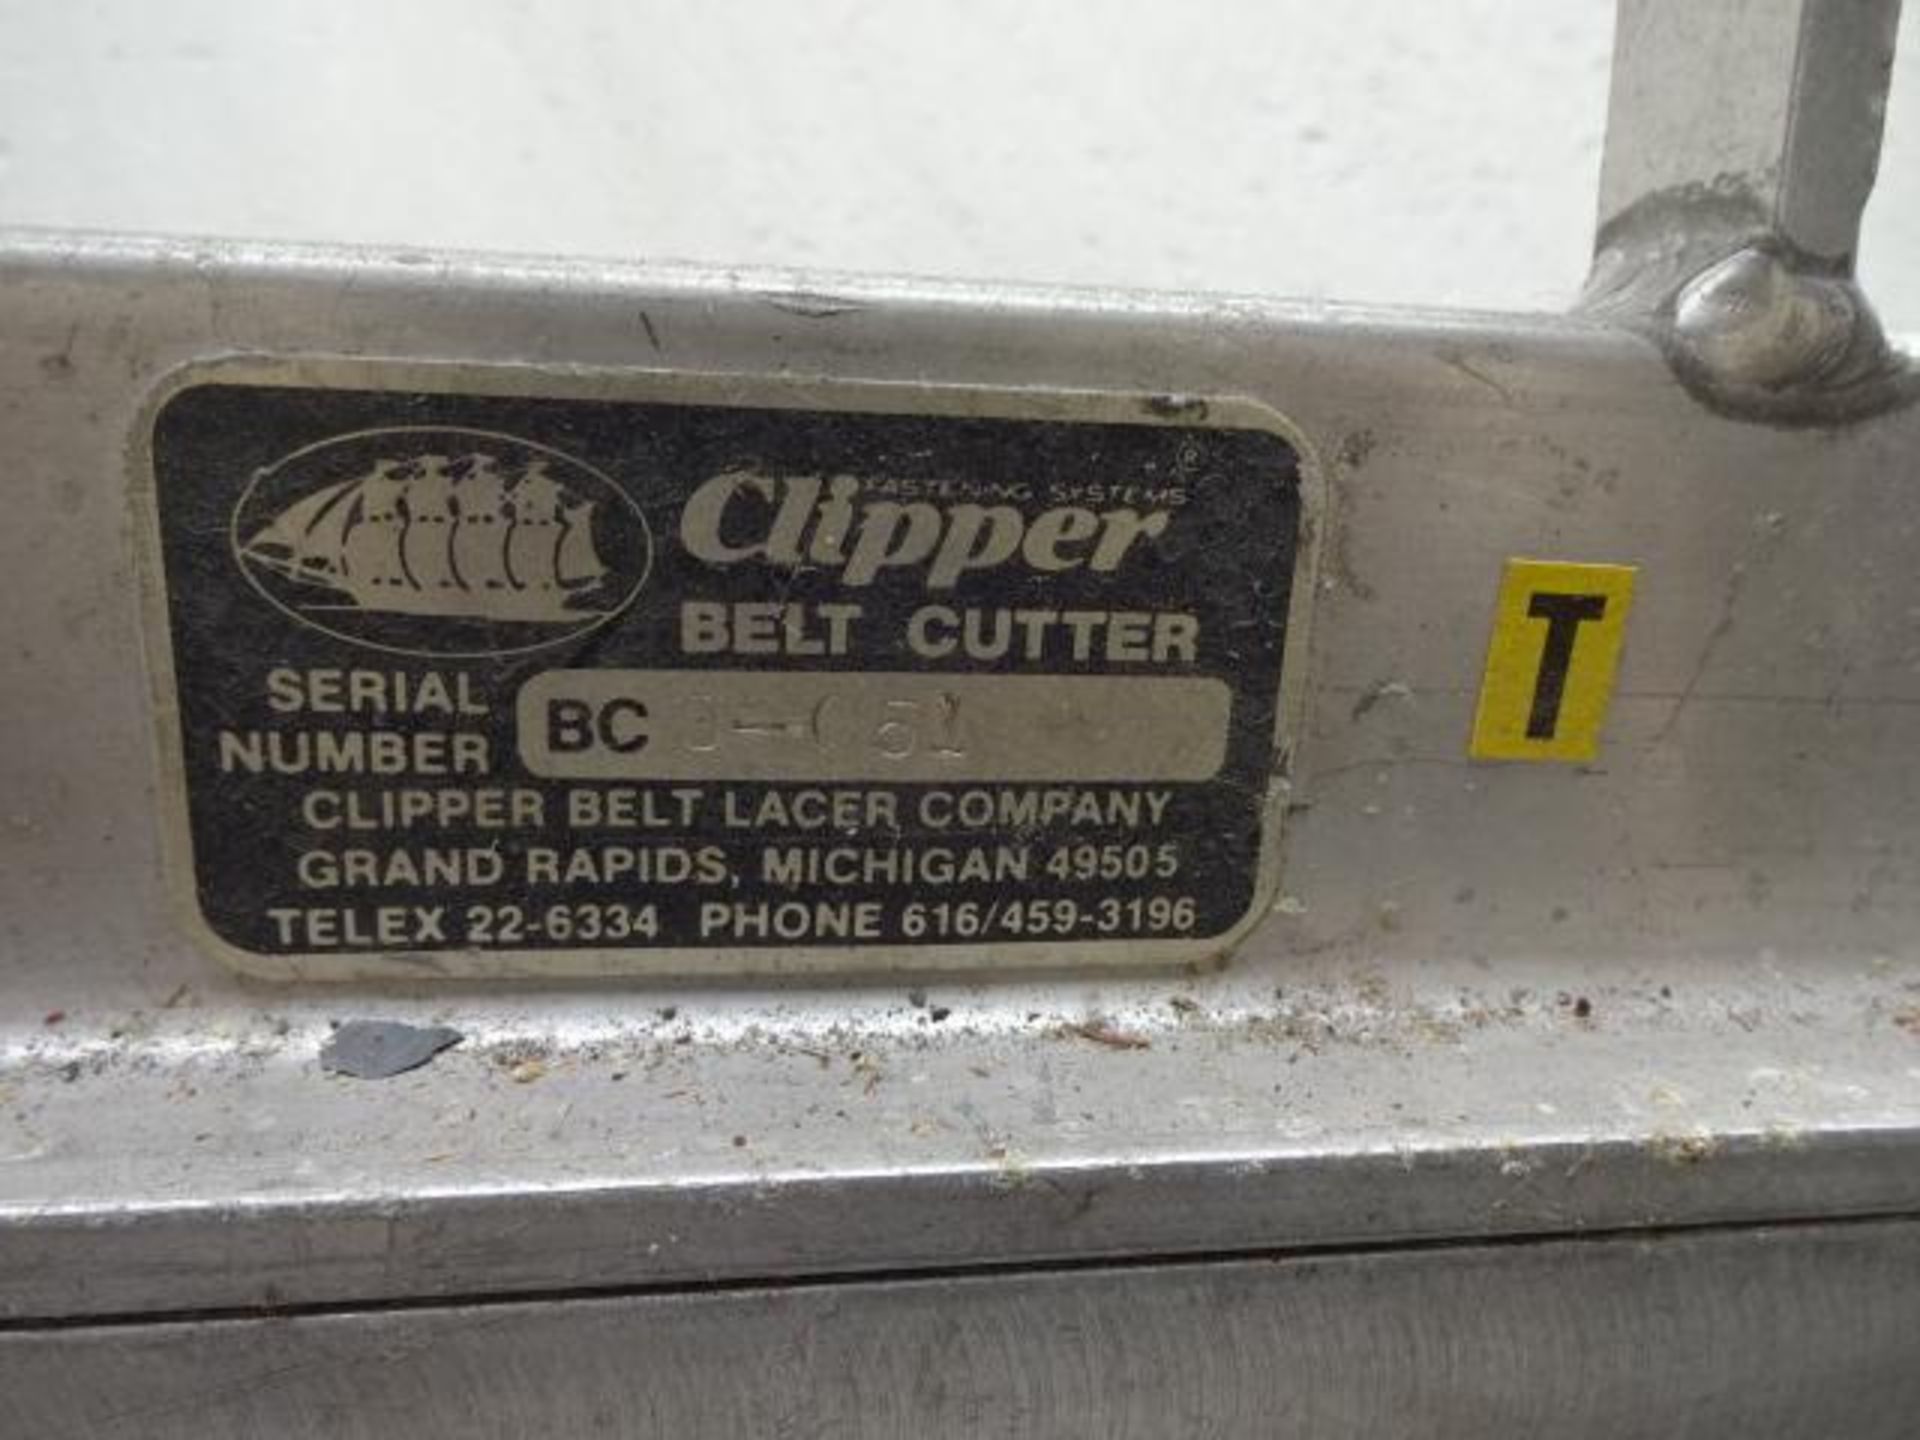 Clipper brand belt cutter - Belt cutter de marque clipper - Image 2 of 2